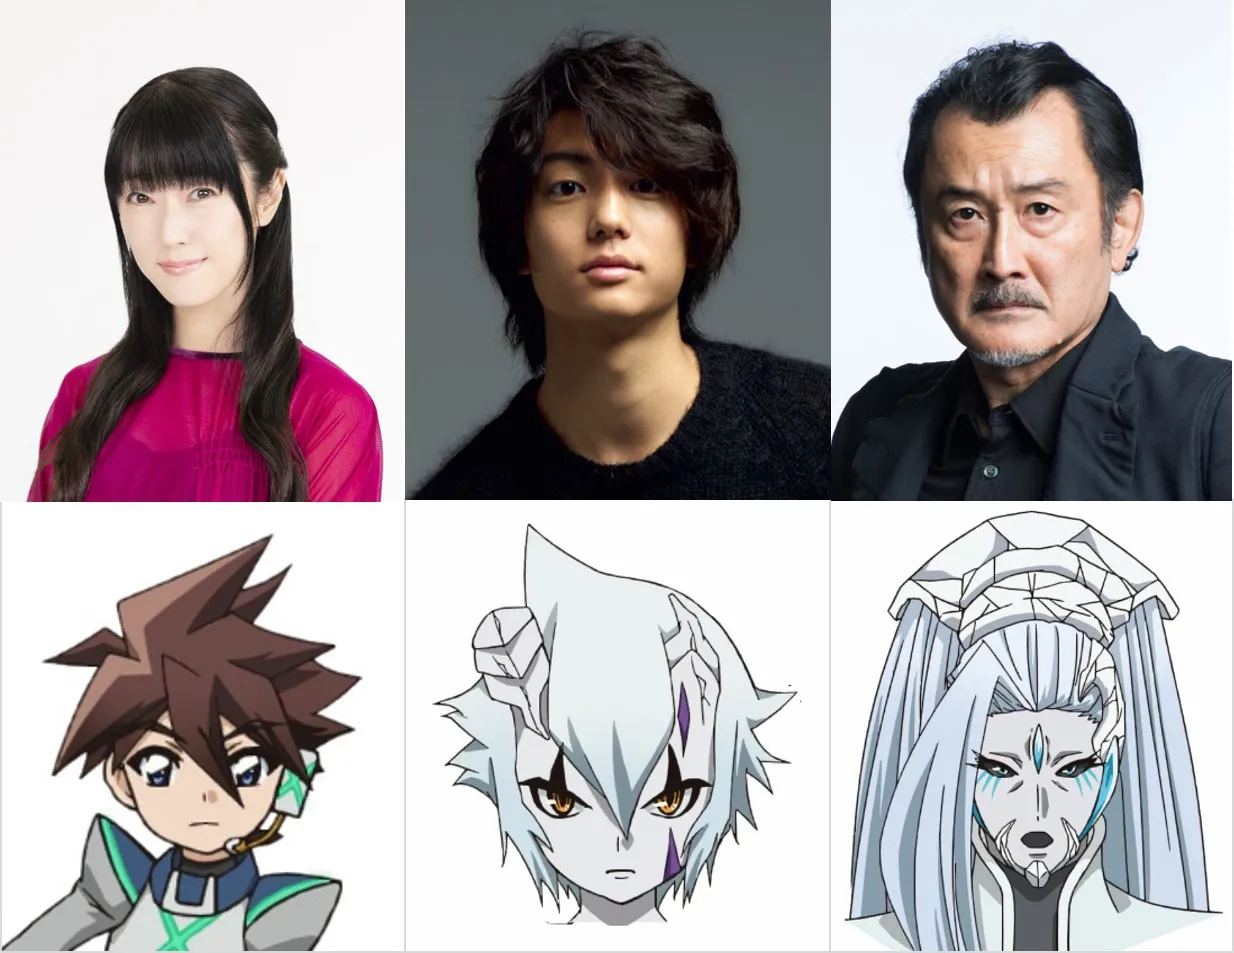 伊藤健太郎、吉田鋼太郎、釘宮理恵が演じるキャラクターのビジュアルが公開